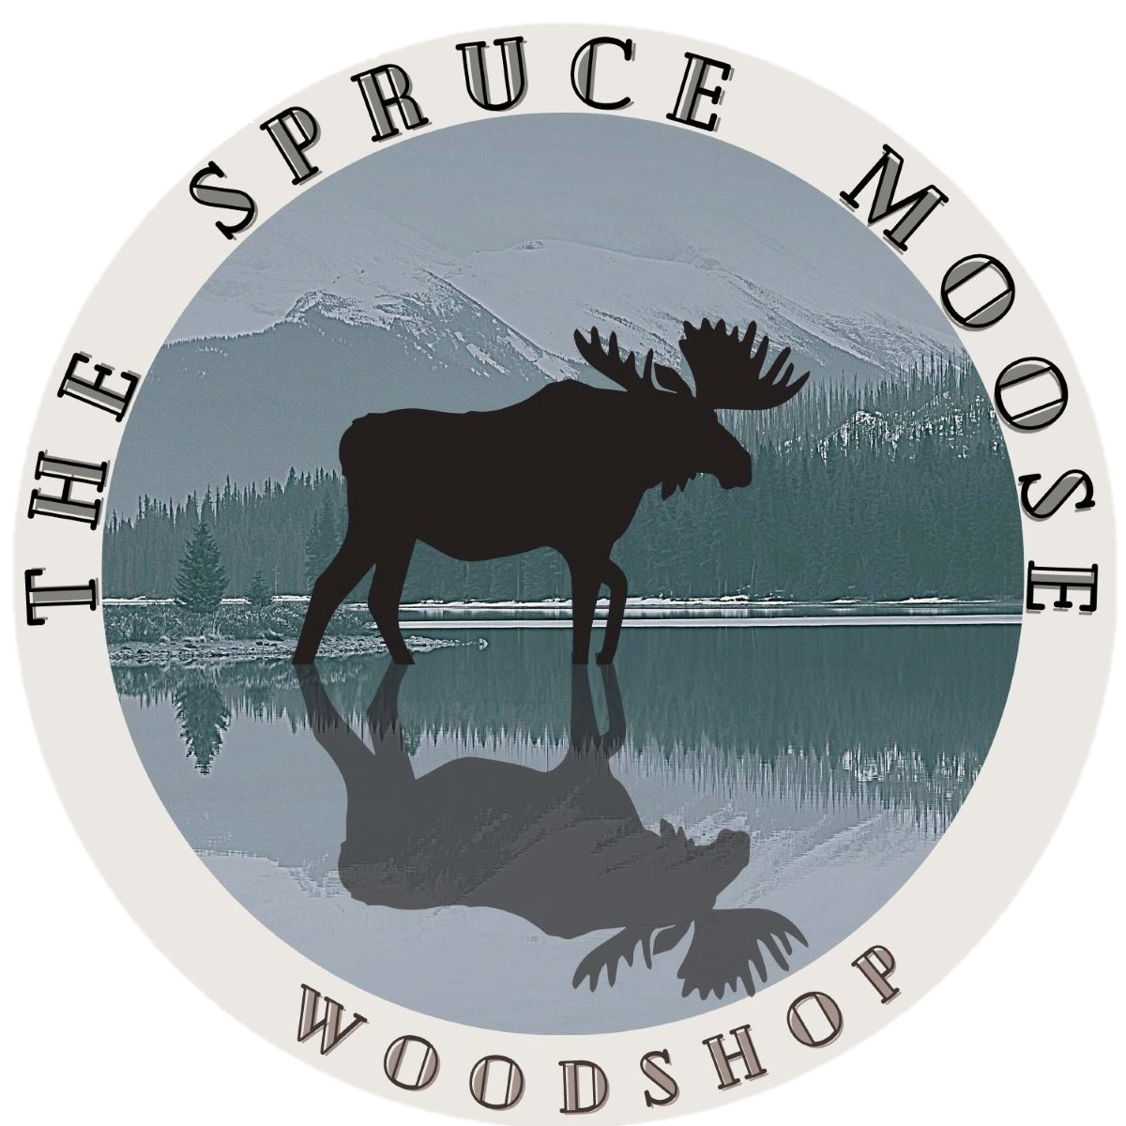 The Spruce Moose Woodshop